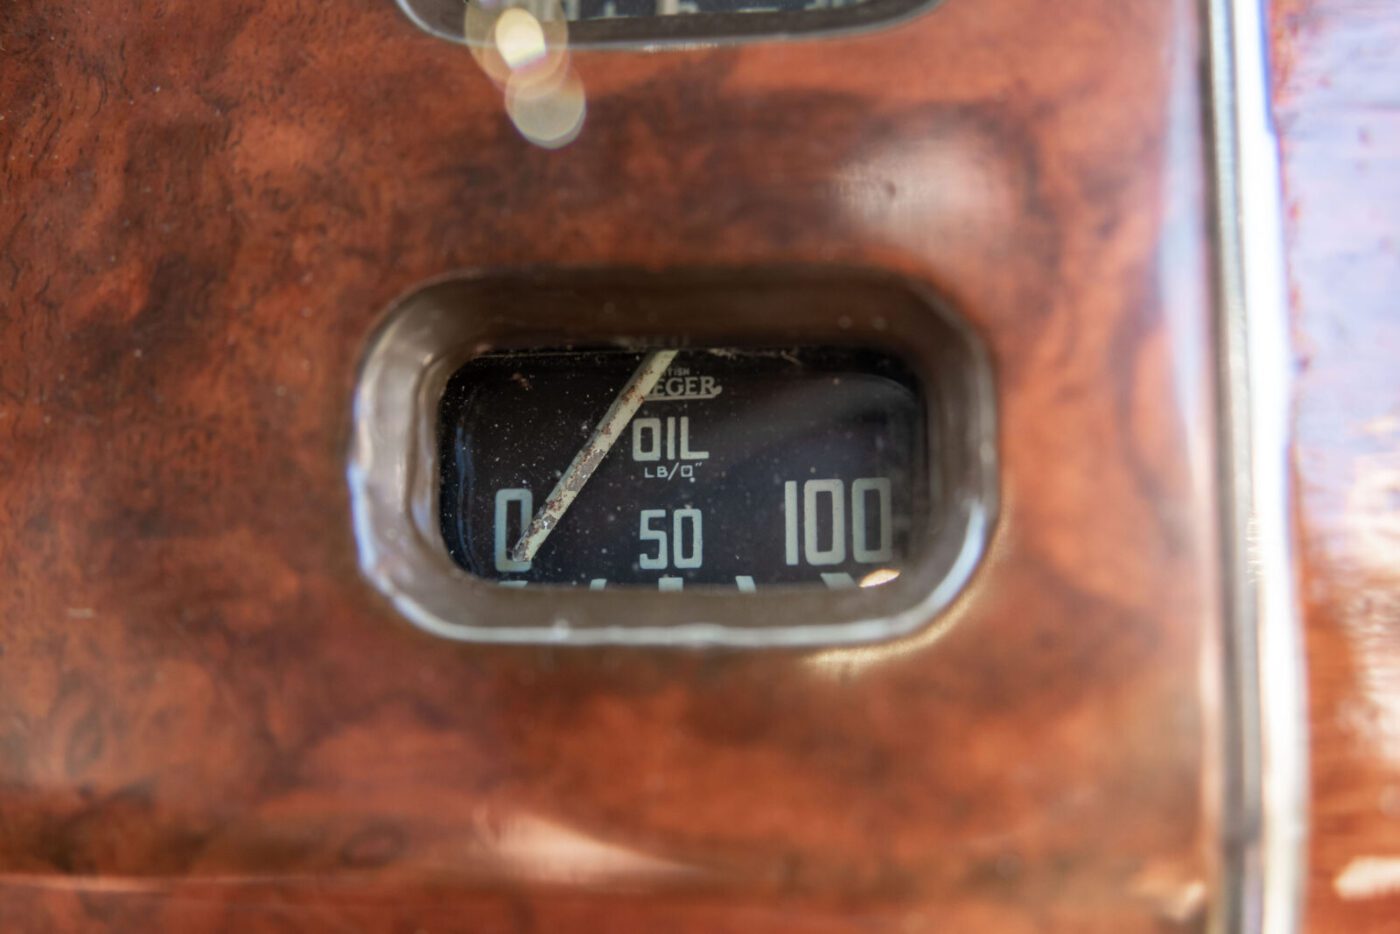 MG Magnette Jaeger oil gauge